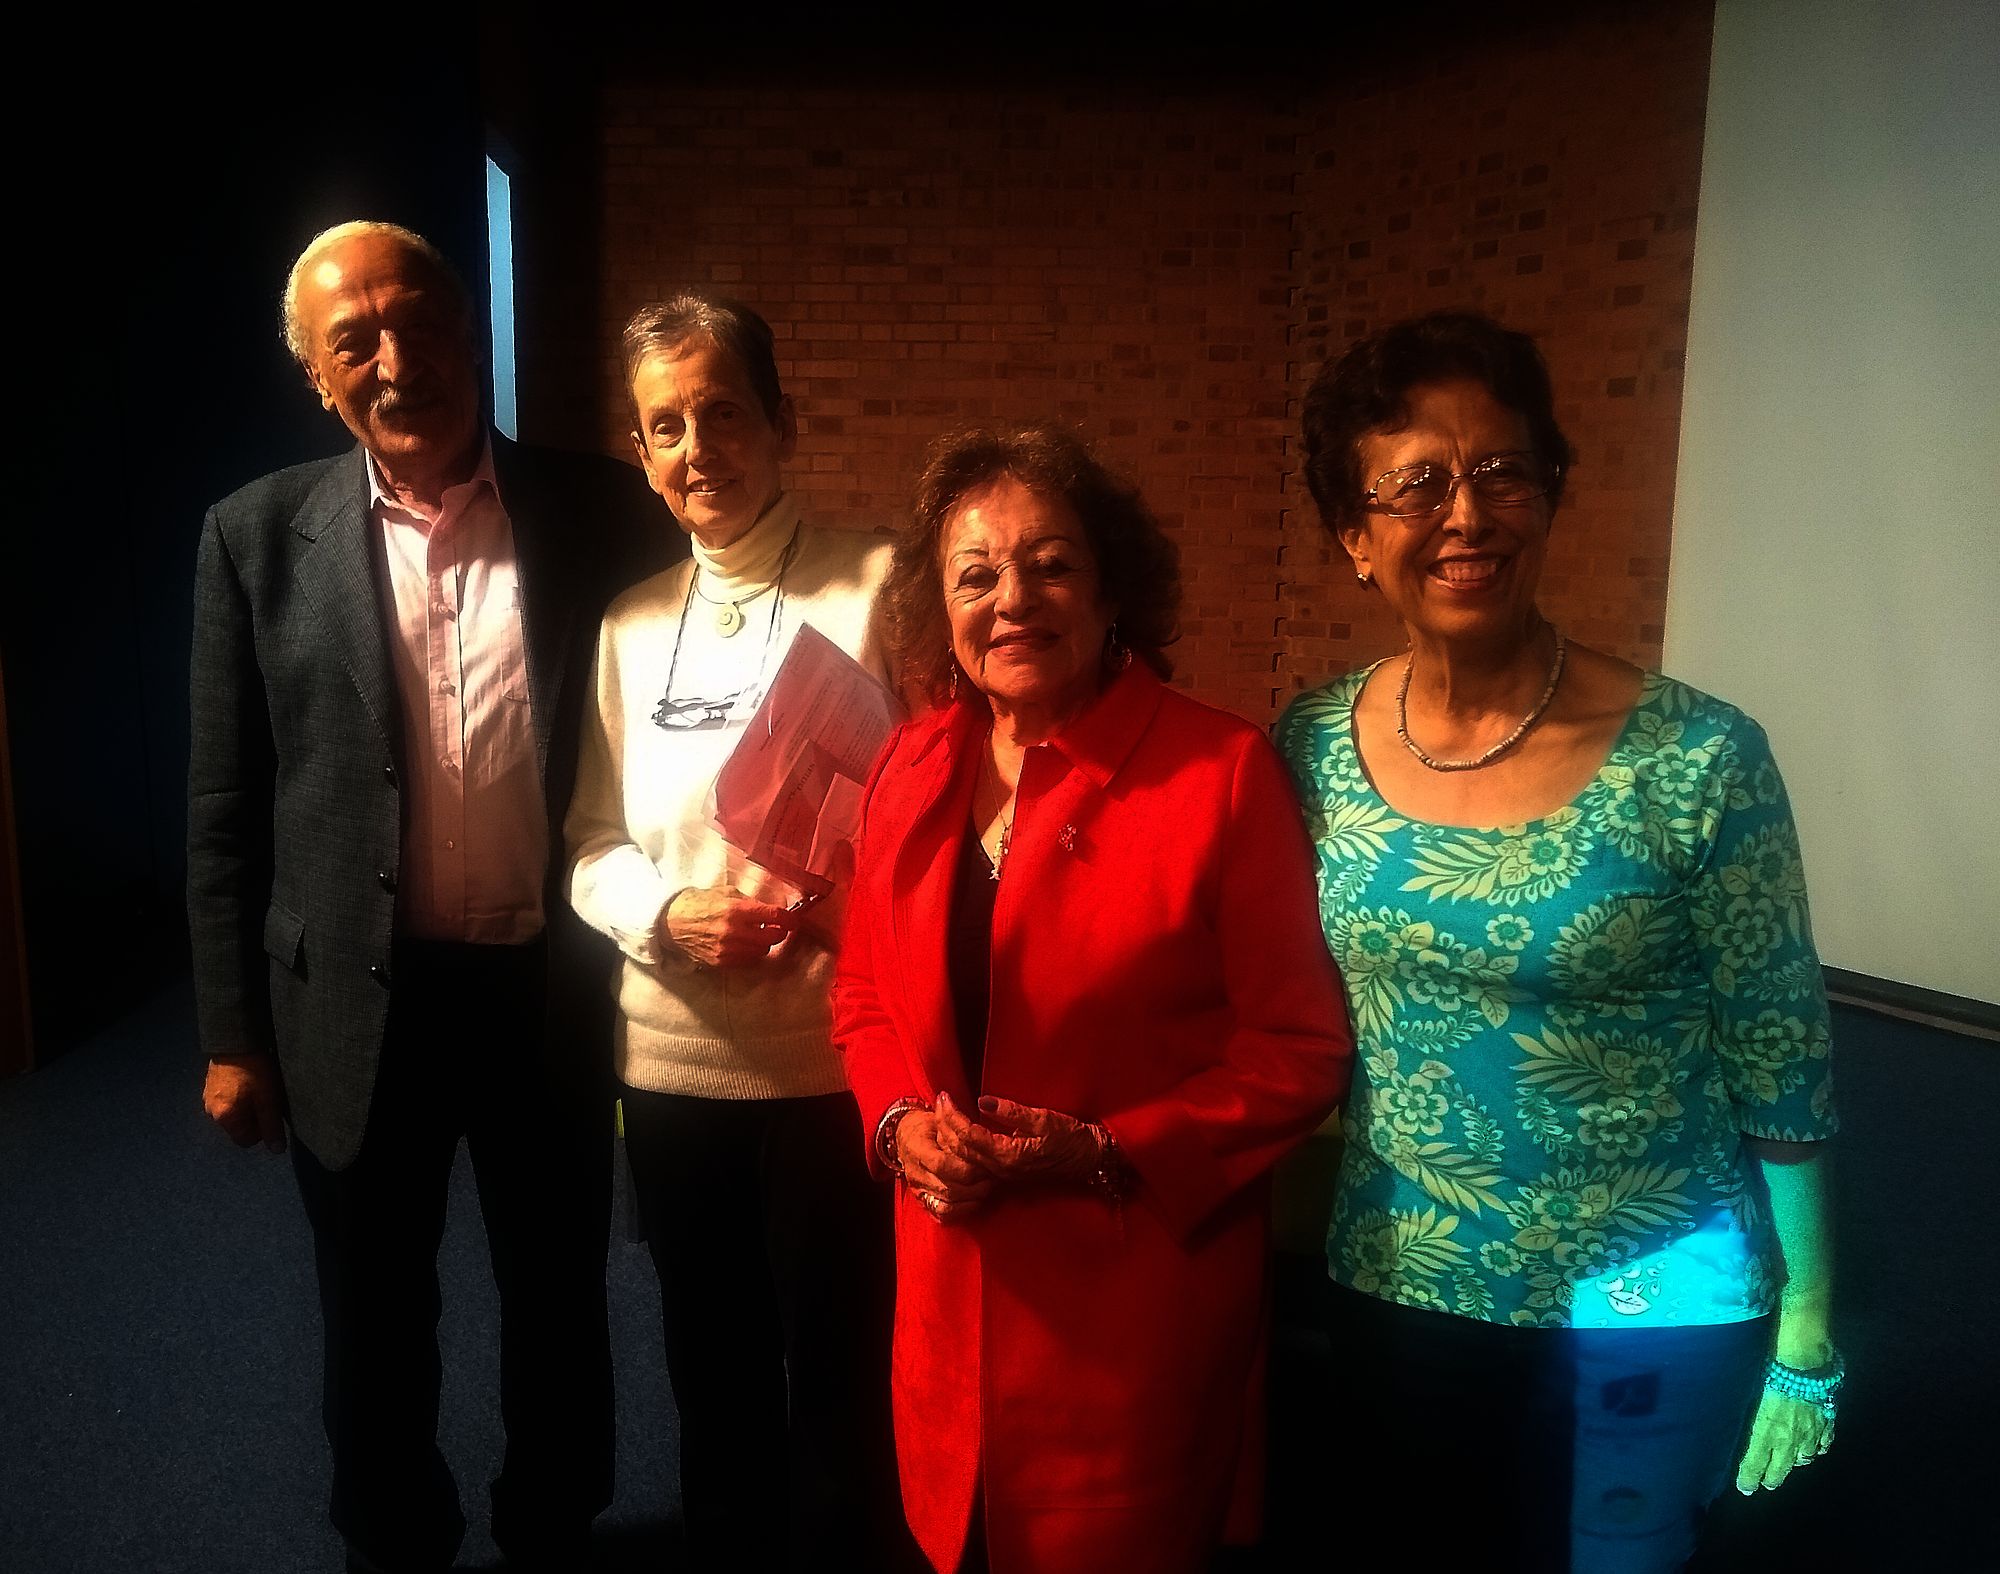 De izquierda a derecha: Ramón fayad, Florence Thomas, Alegría Fonseca y Lyla Piedad Velosa Amature